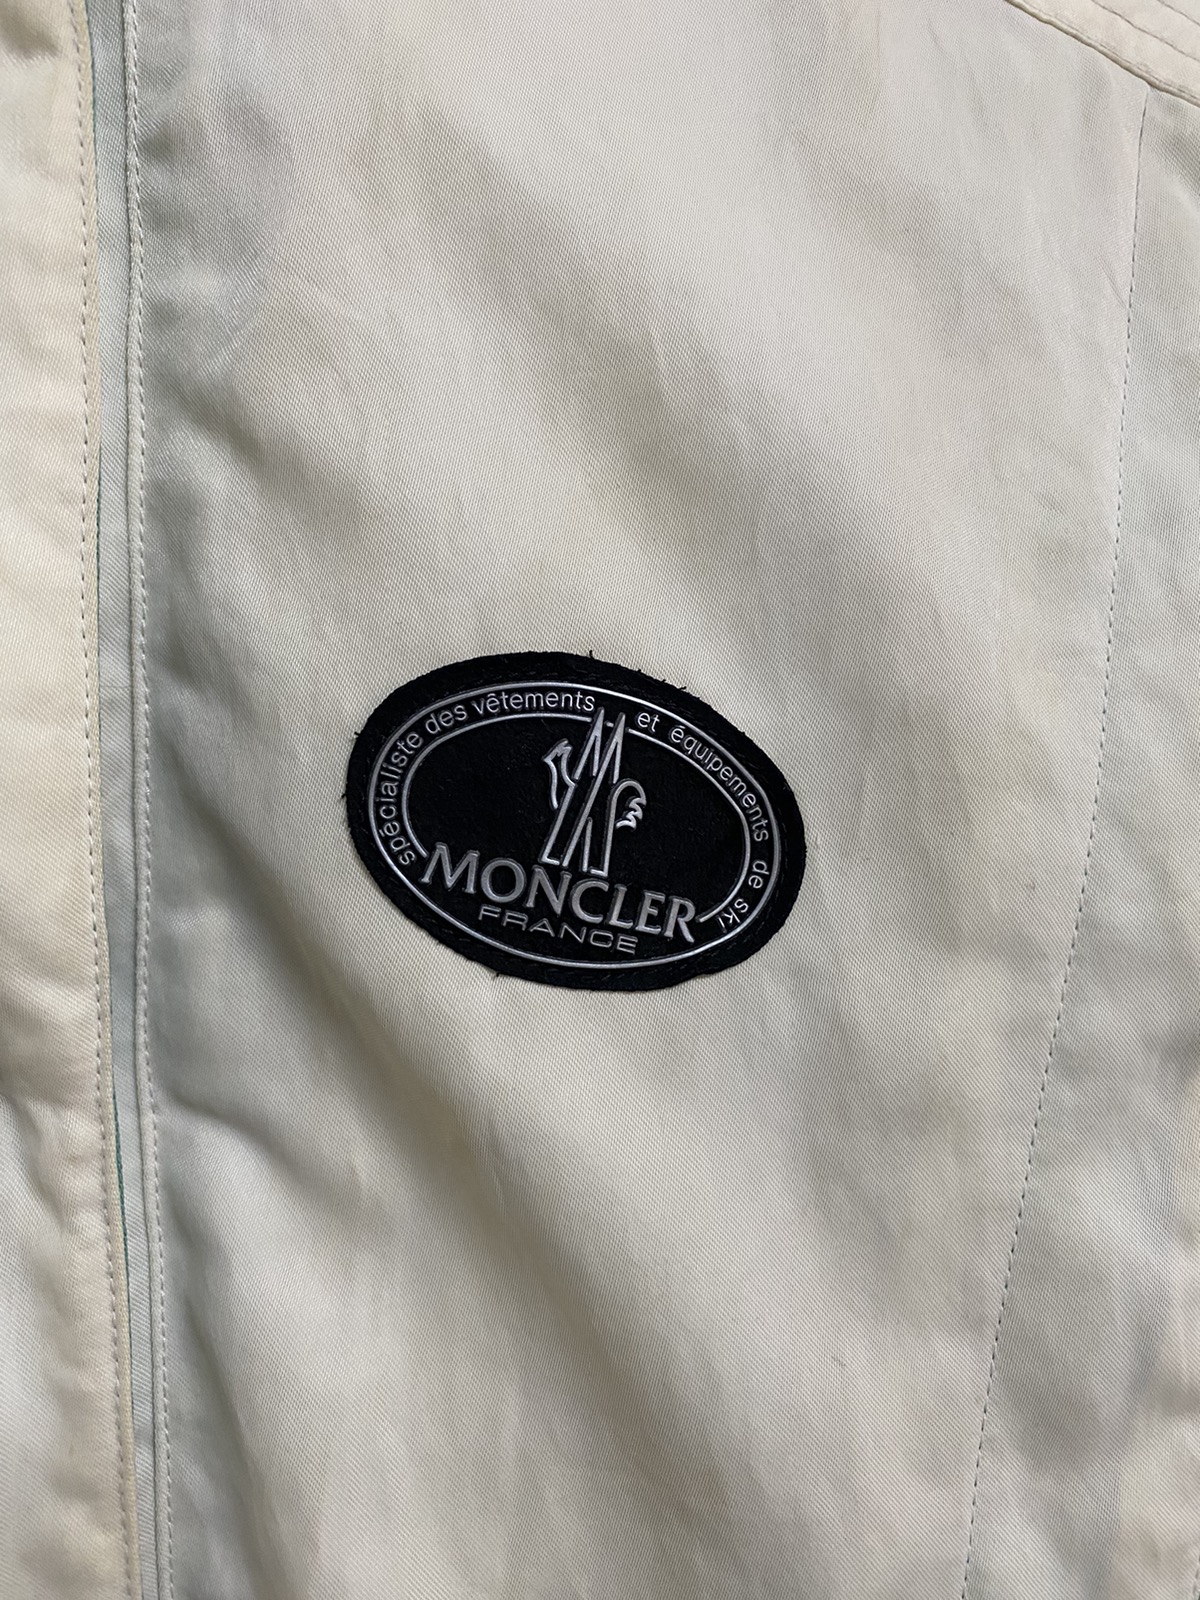 Vintage Moncler Ski Wear Jacket - 6